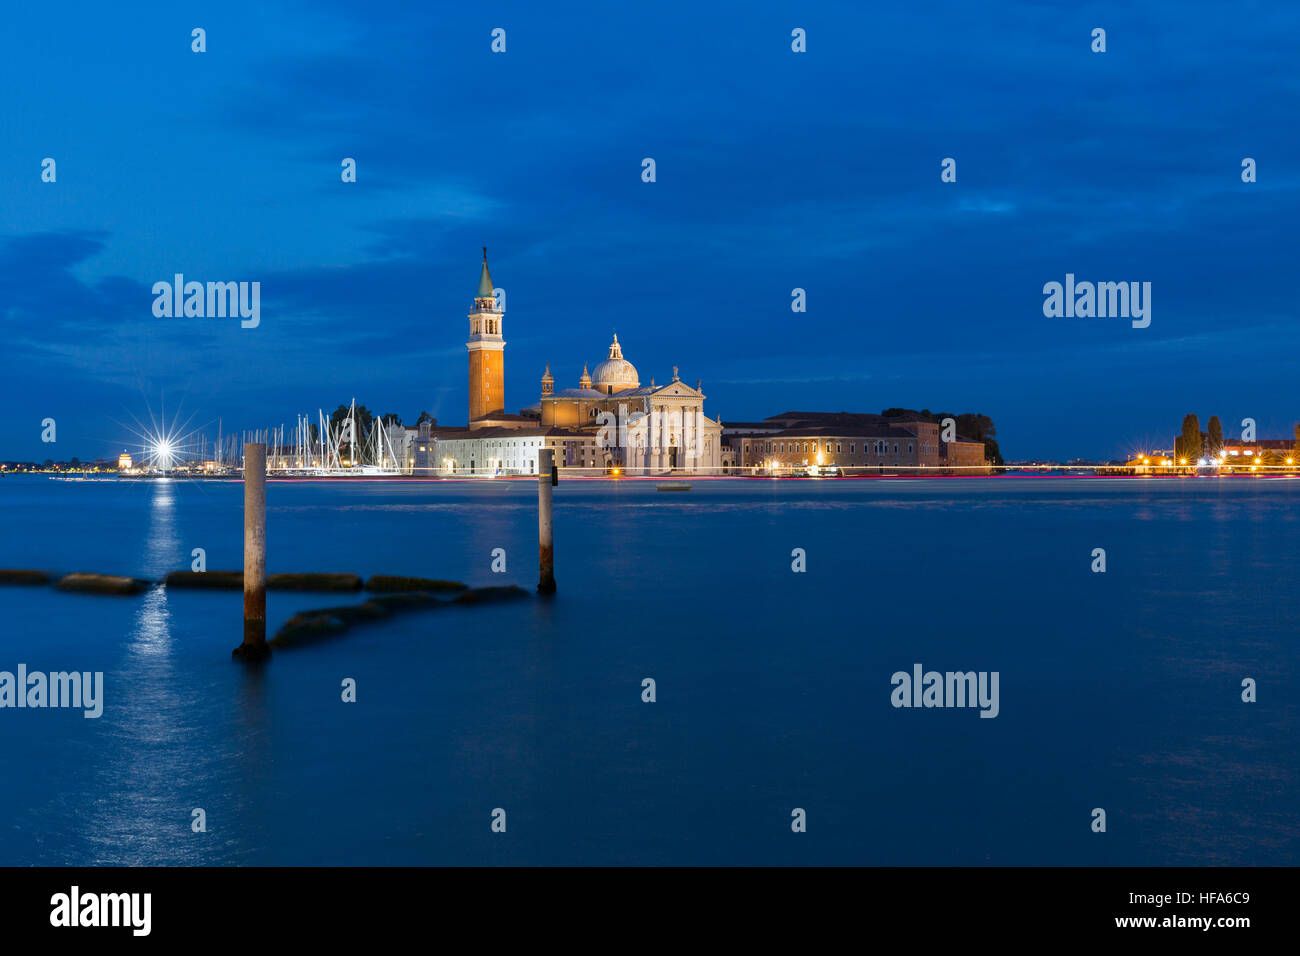 Church of San Giorgio Maggiore with boats traces at night in Venice, Italy. Stock Photo